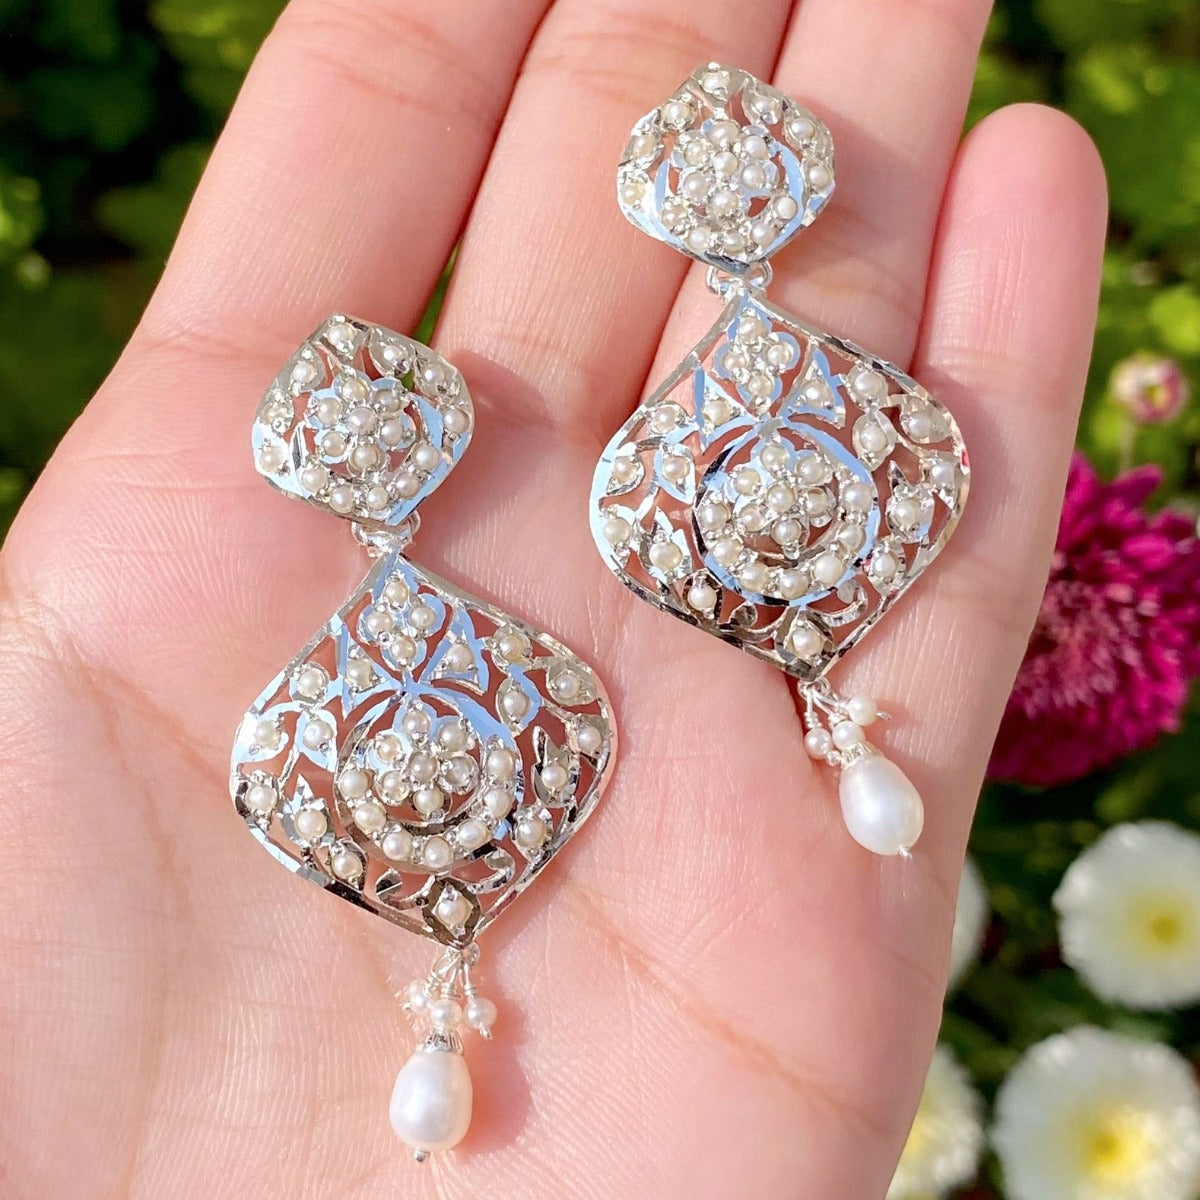 buy 925 silver earrings for women online